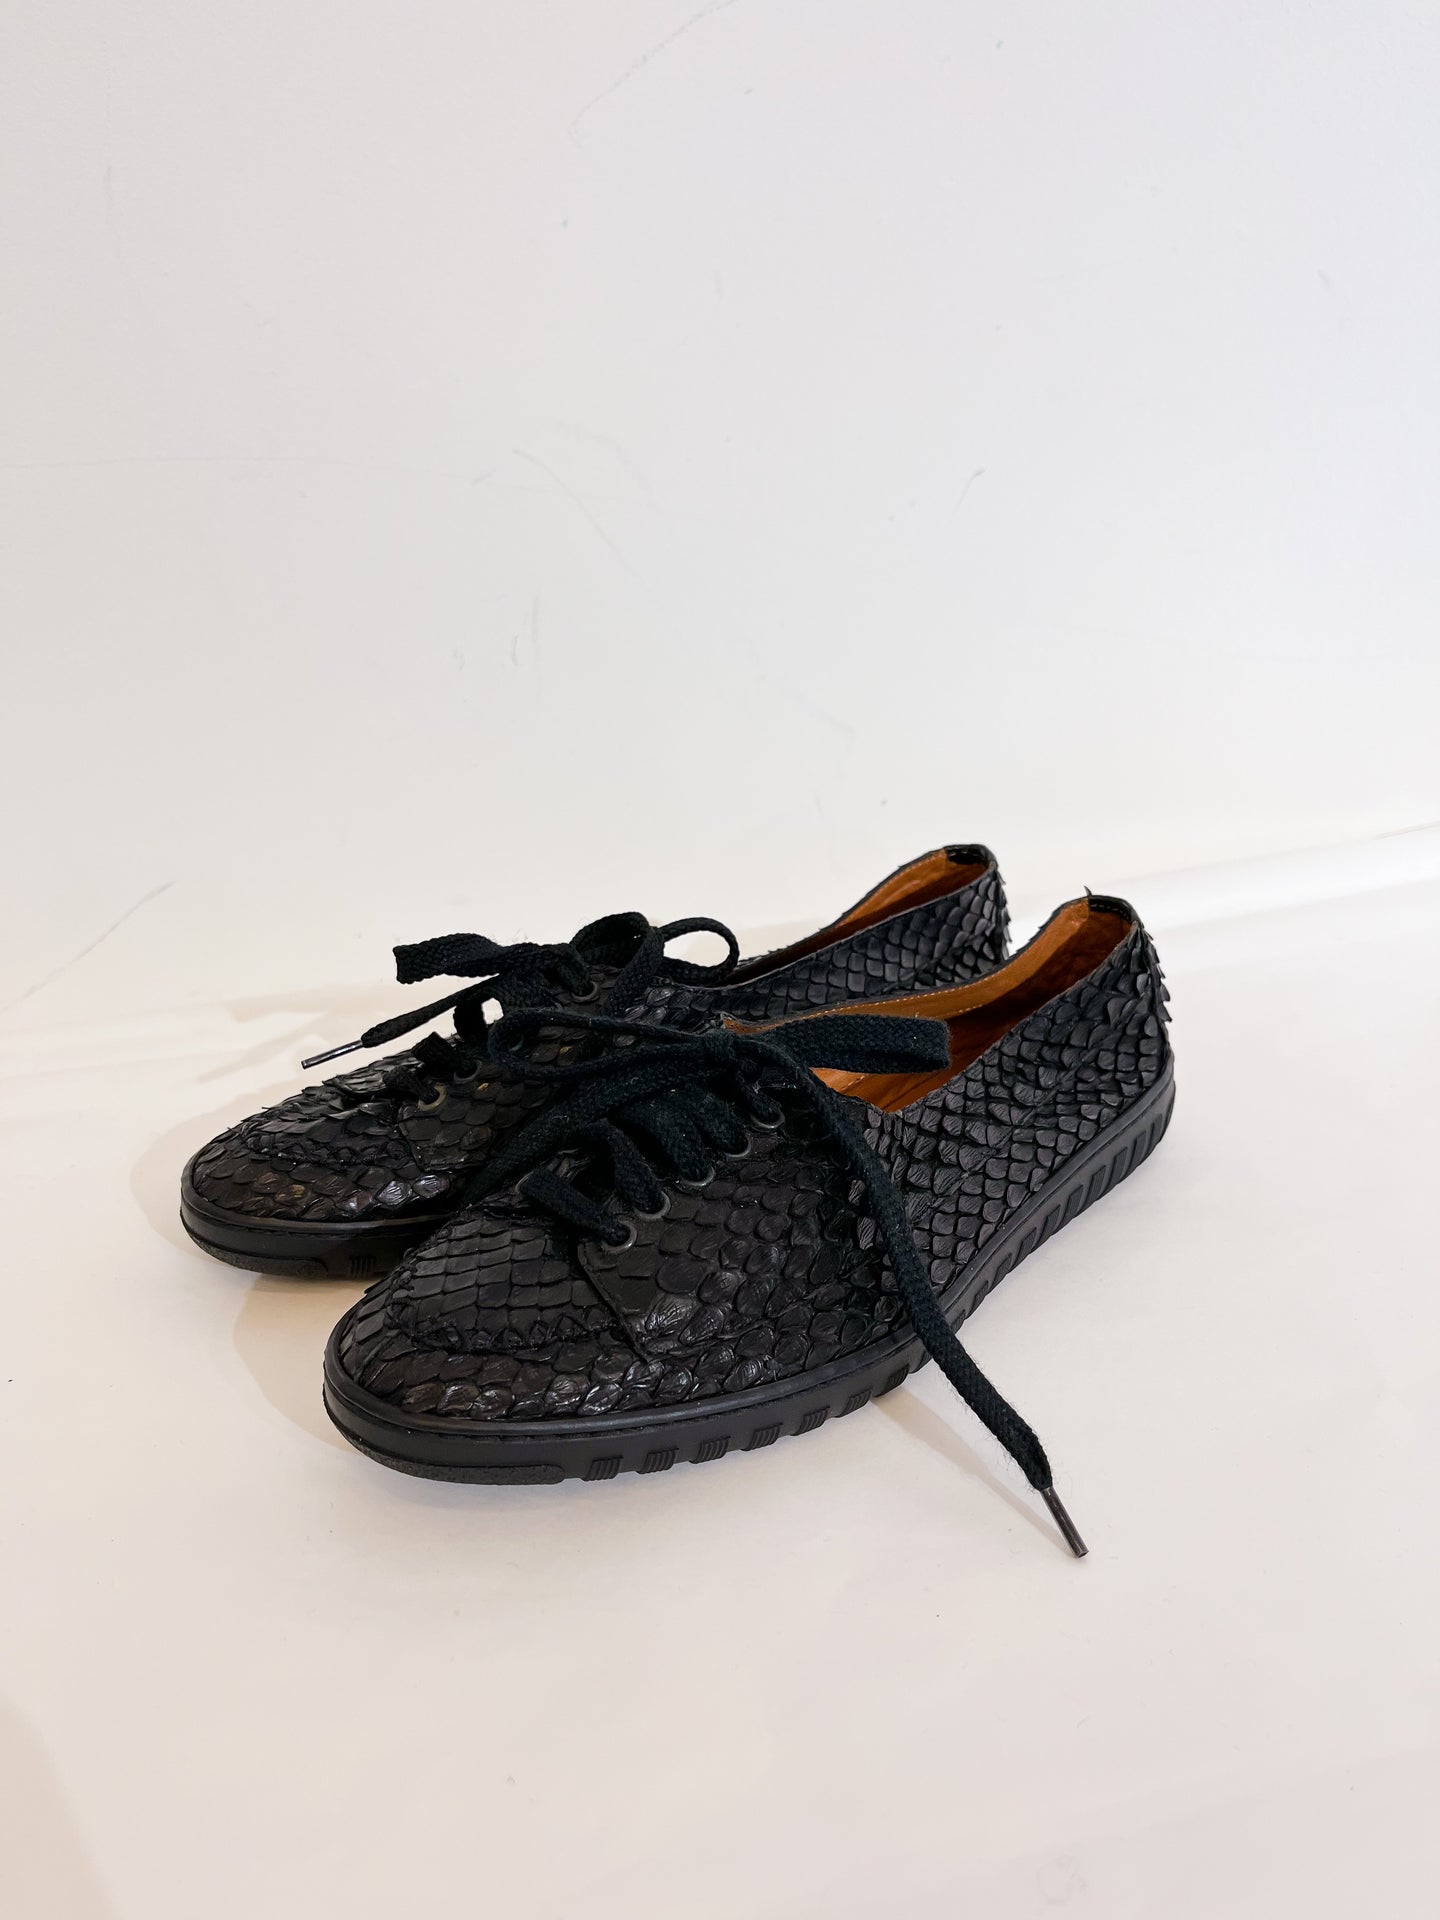 Python shoes - N° 37.5